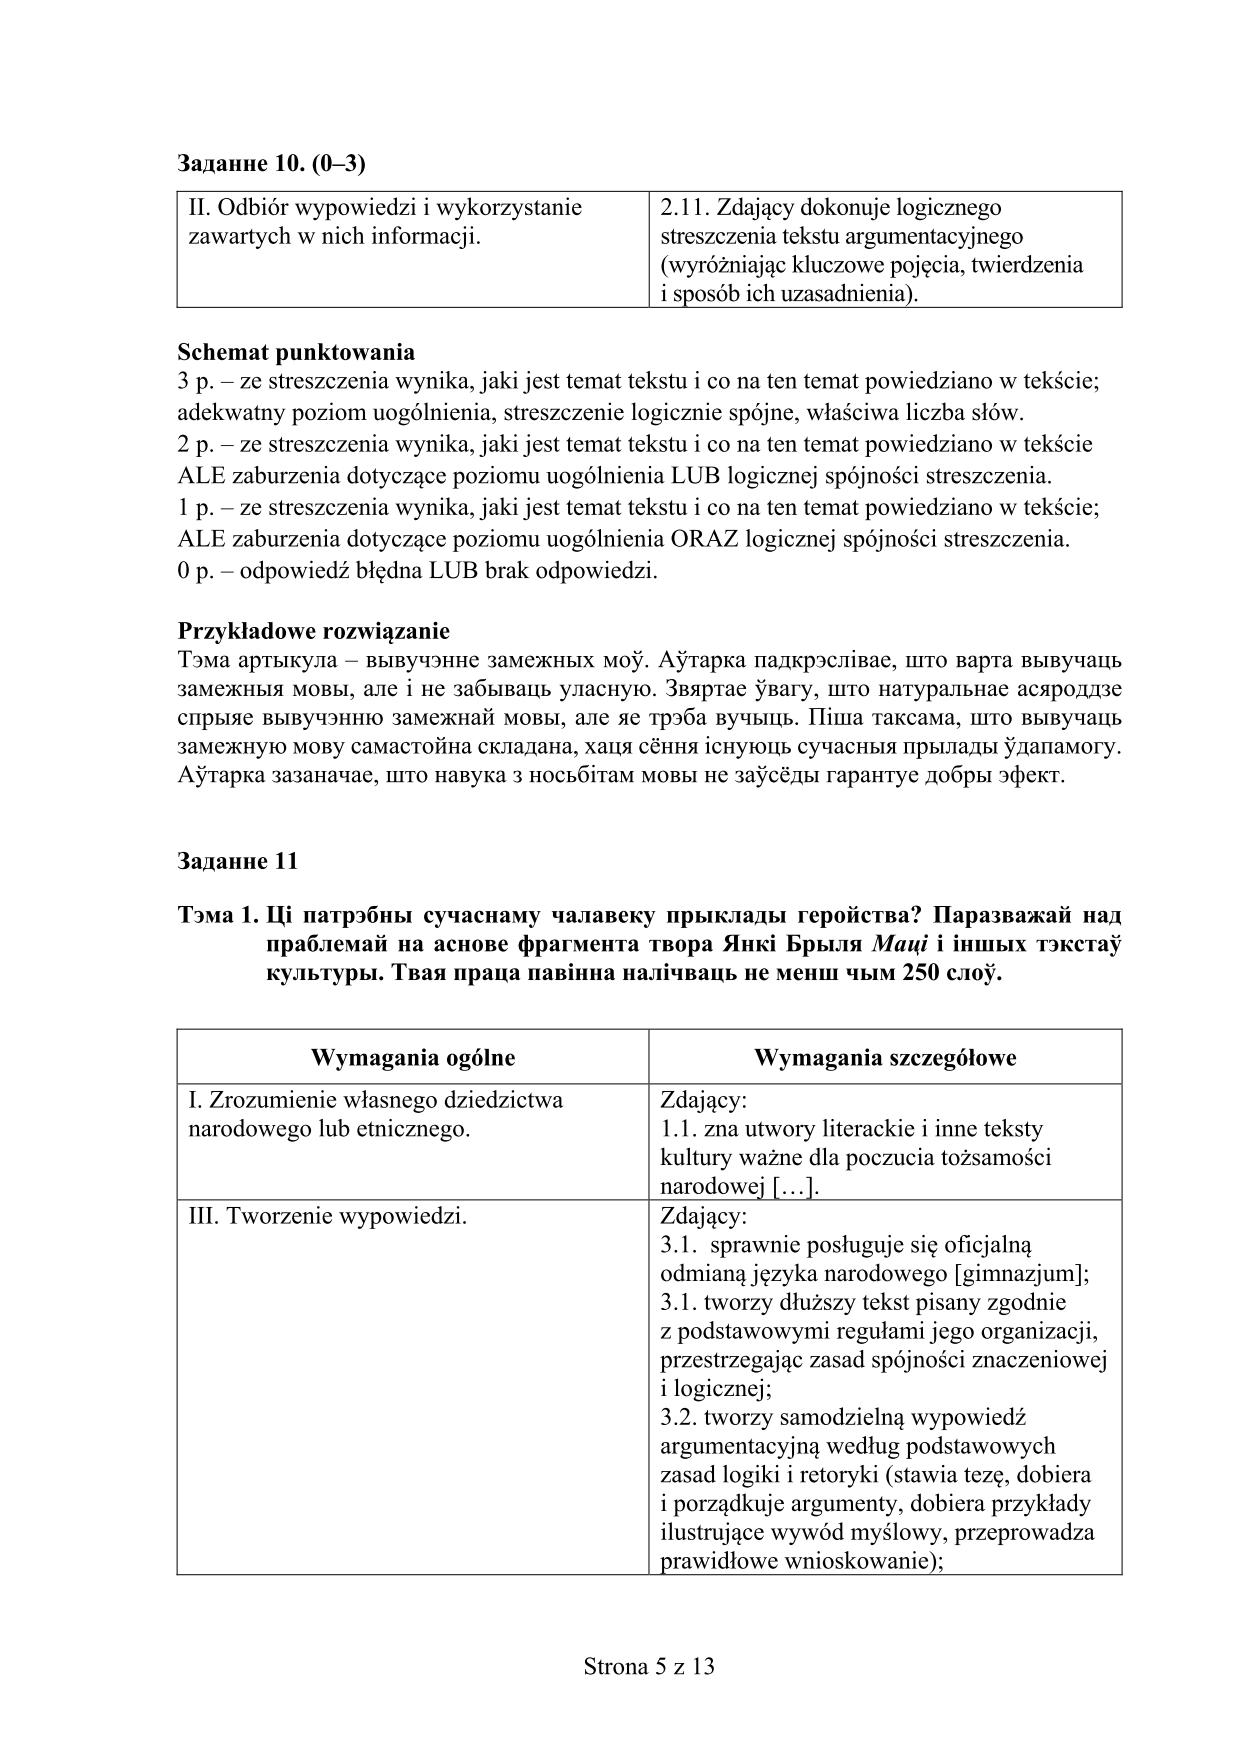 odpowiedzi-jezyk-bialoruski-poziom-podstawowy-matura-2017 - 5